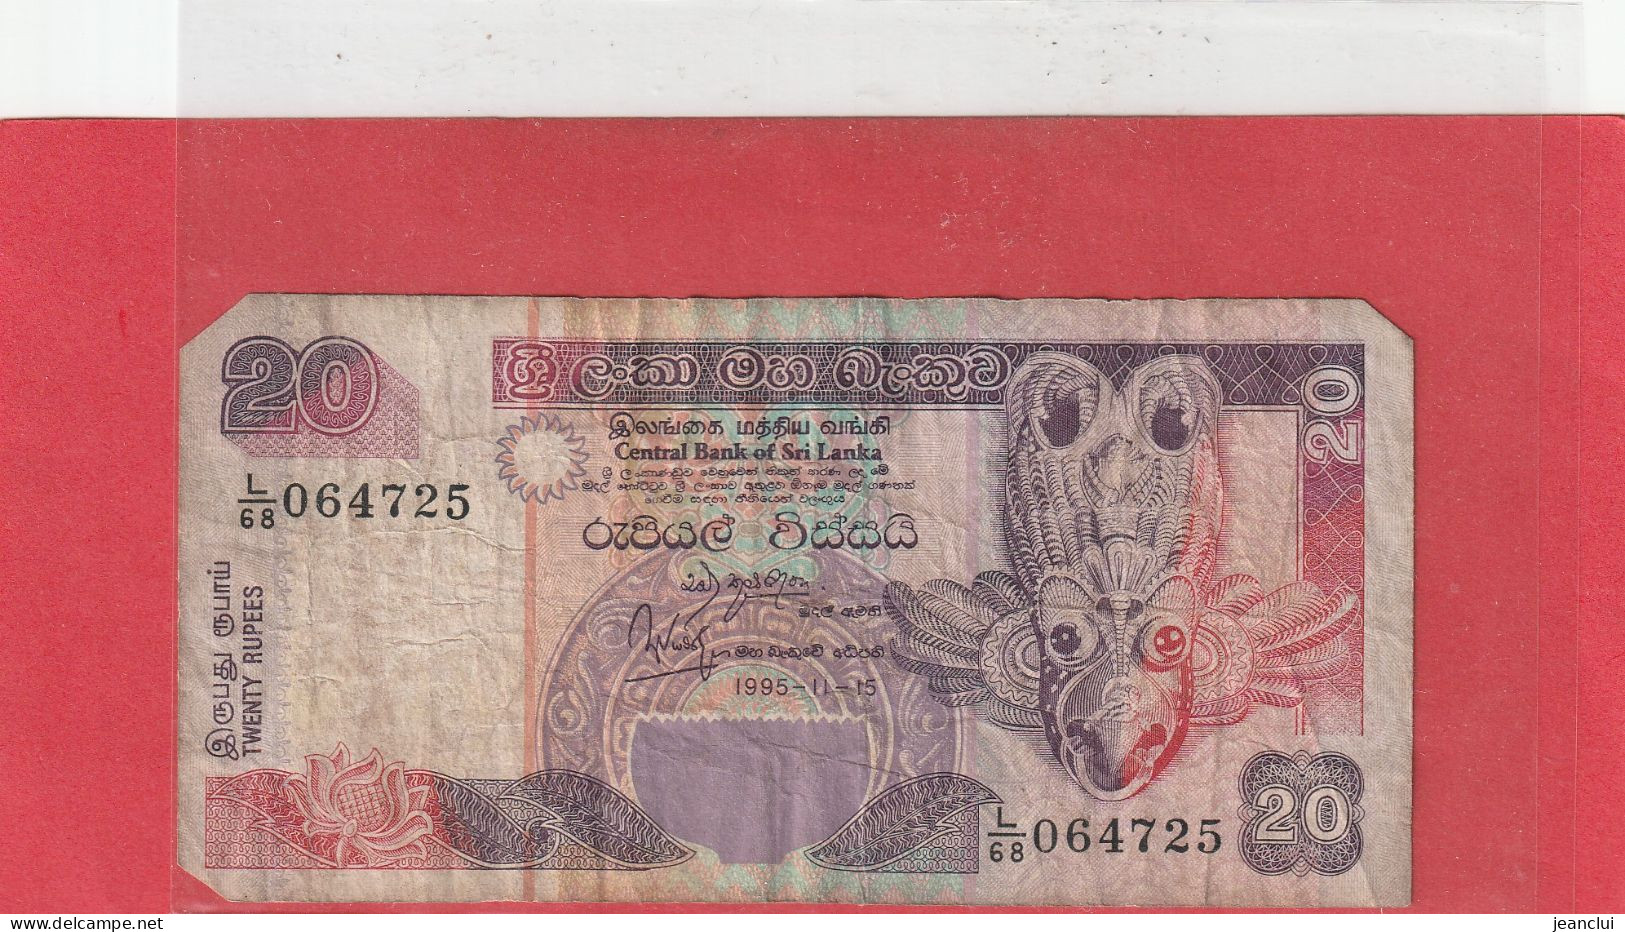 CENTRAL BANK OF SRI LANKA   .  20 RUPEES  .  15-11-1995  .  N°   L/68 064725 .  2 SCANNES  .  BILLET TRES USITE MANQUE 3 - Sri Lanka